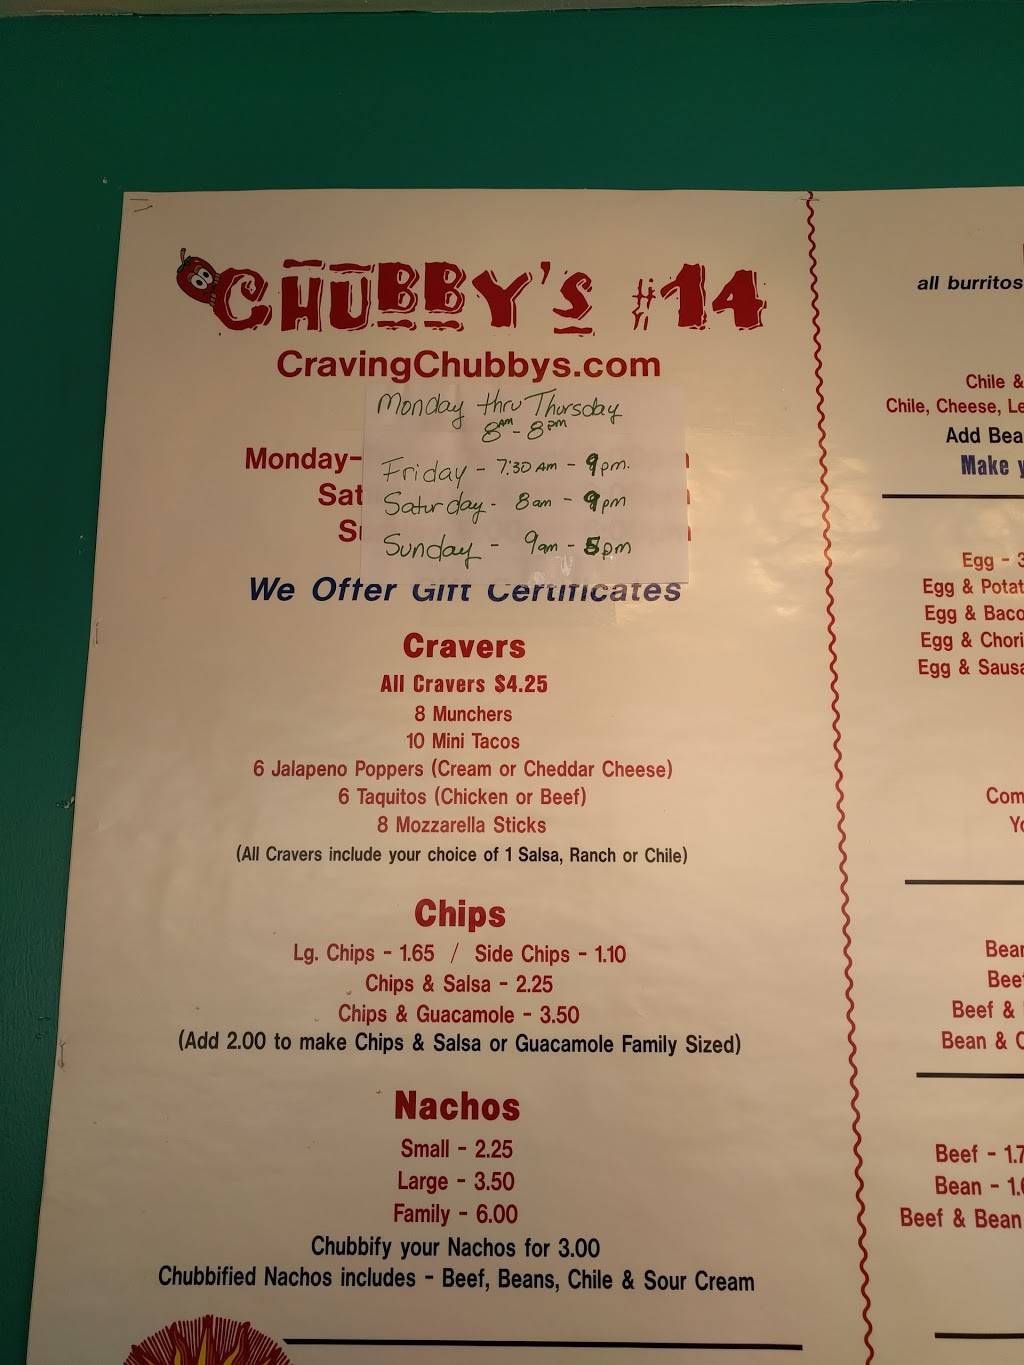 Chubbys #14 | restaurant | 5826 S Lowell Blvd, Littleton, CO 80123, USA | 3037307405 OR +1 303-730-7405